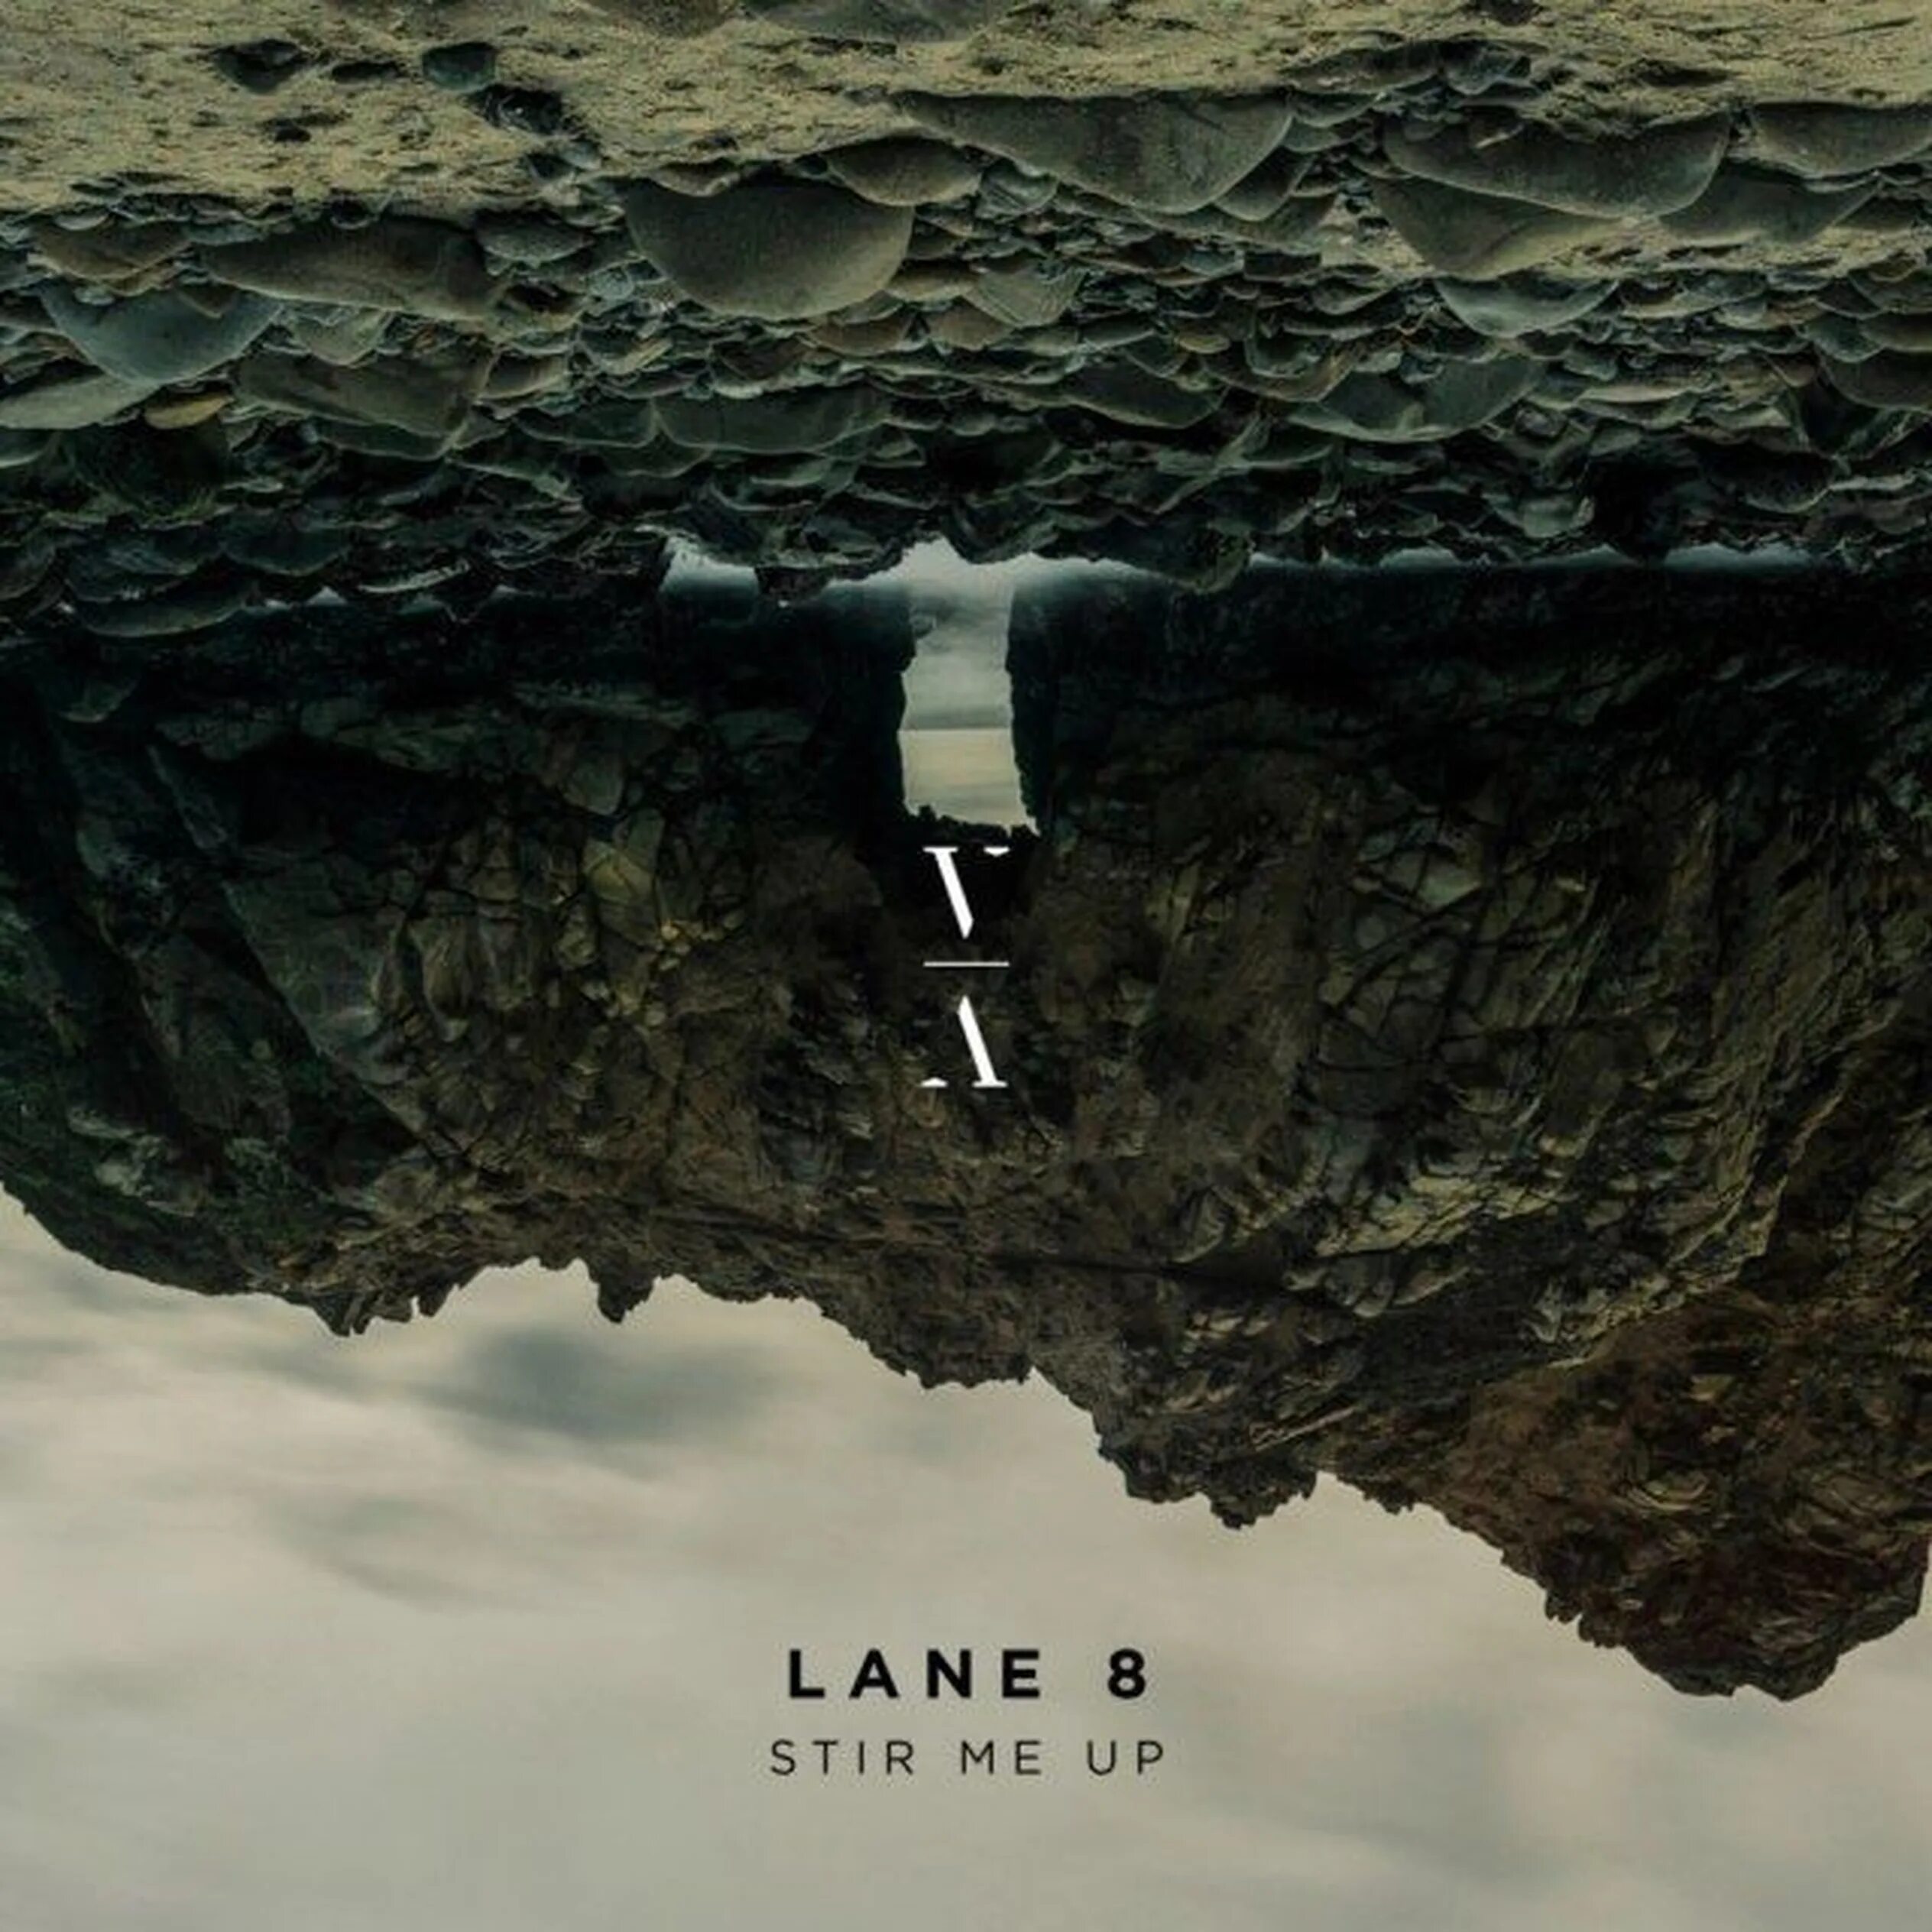 Up ln. Stir me up Lane 8. Lane 8 Brightest Lights album. Голос Lane 8. The Rope Lane 8.